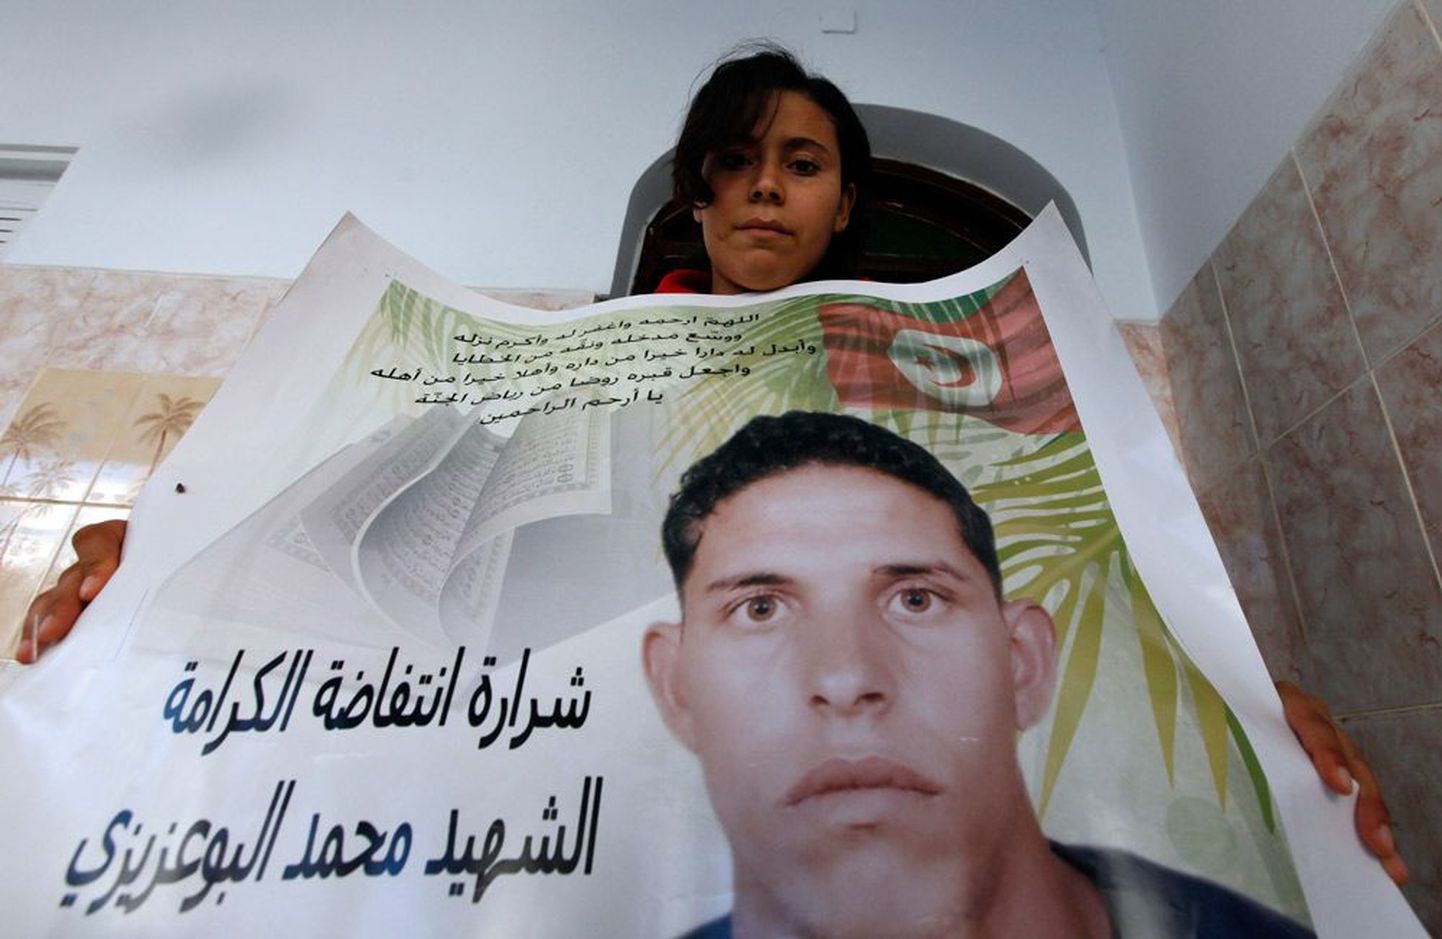 Postuumselt pälvis auhinna Mohamed   Bouazizi, kelle enesesüütamine lahvatas araabia kevade. Plakatit hoiab tema    õde Samia.